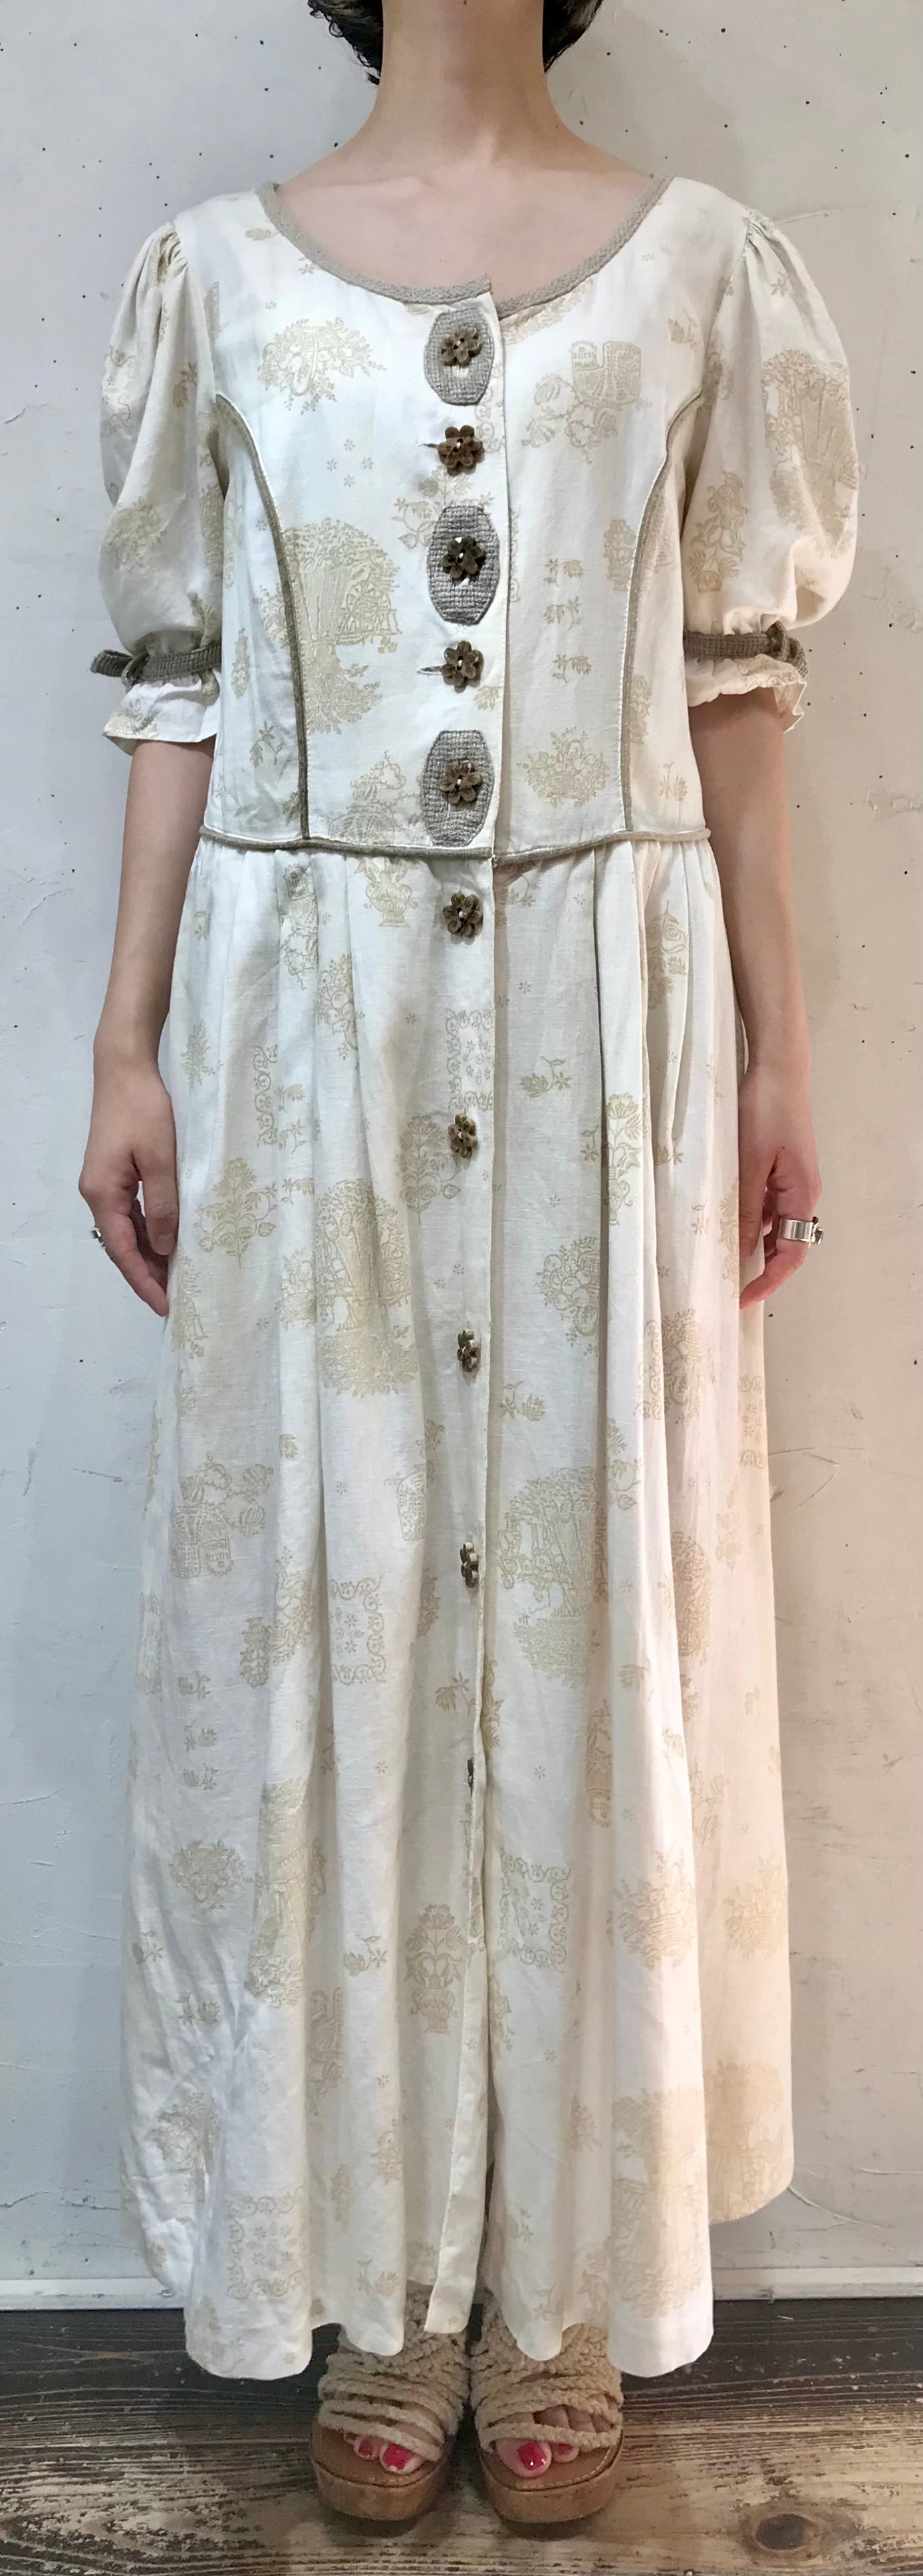 Vintage Dress 〜チロル×フラワーボタン〜 [C19714]